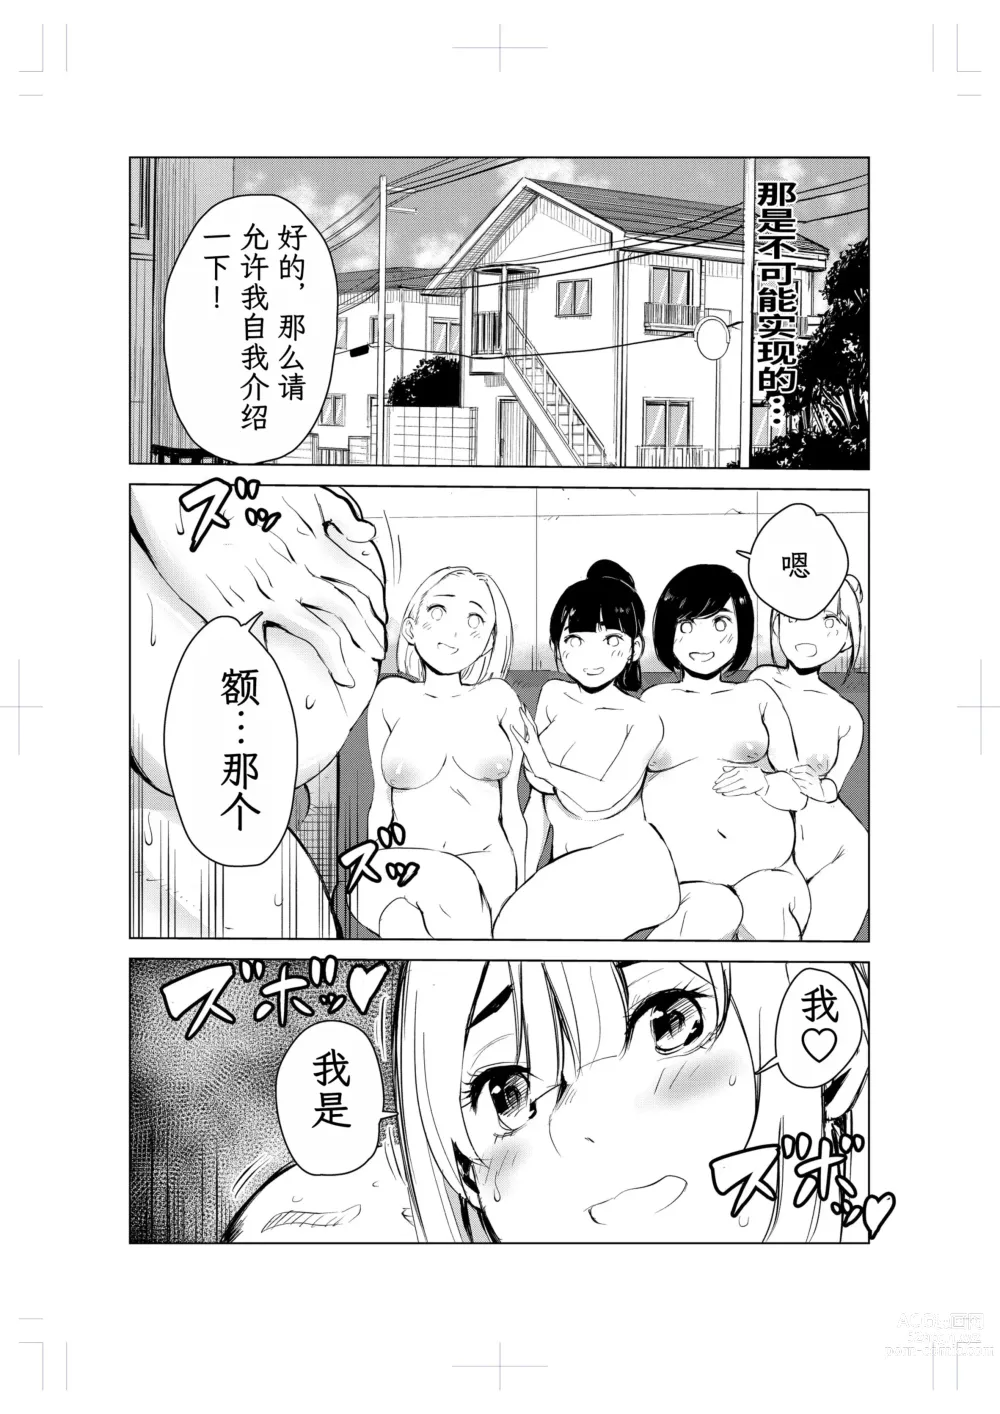 Page 75 of doujinshi 40-sai no Mahoutsukai 2